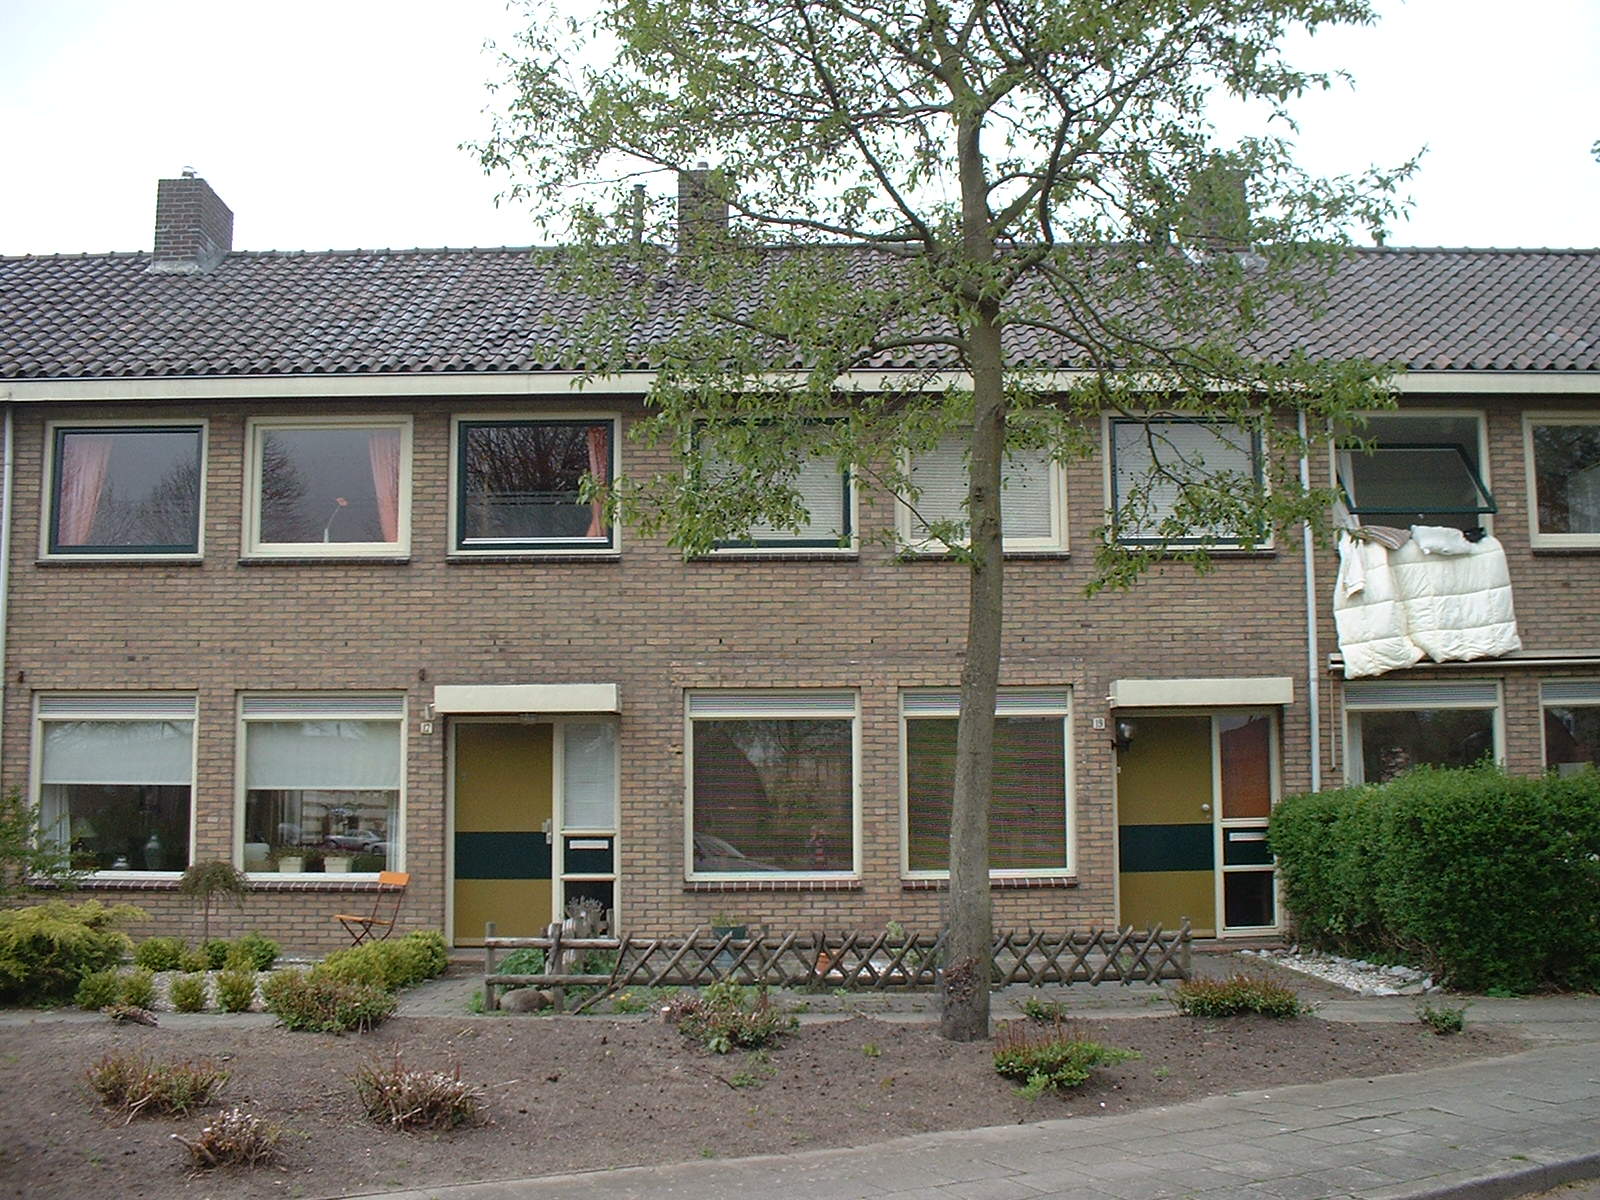 Van Ewijcksingel 19, 7942 GA Meppel, Nederland